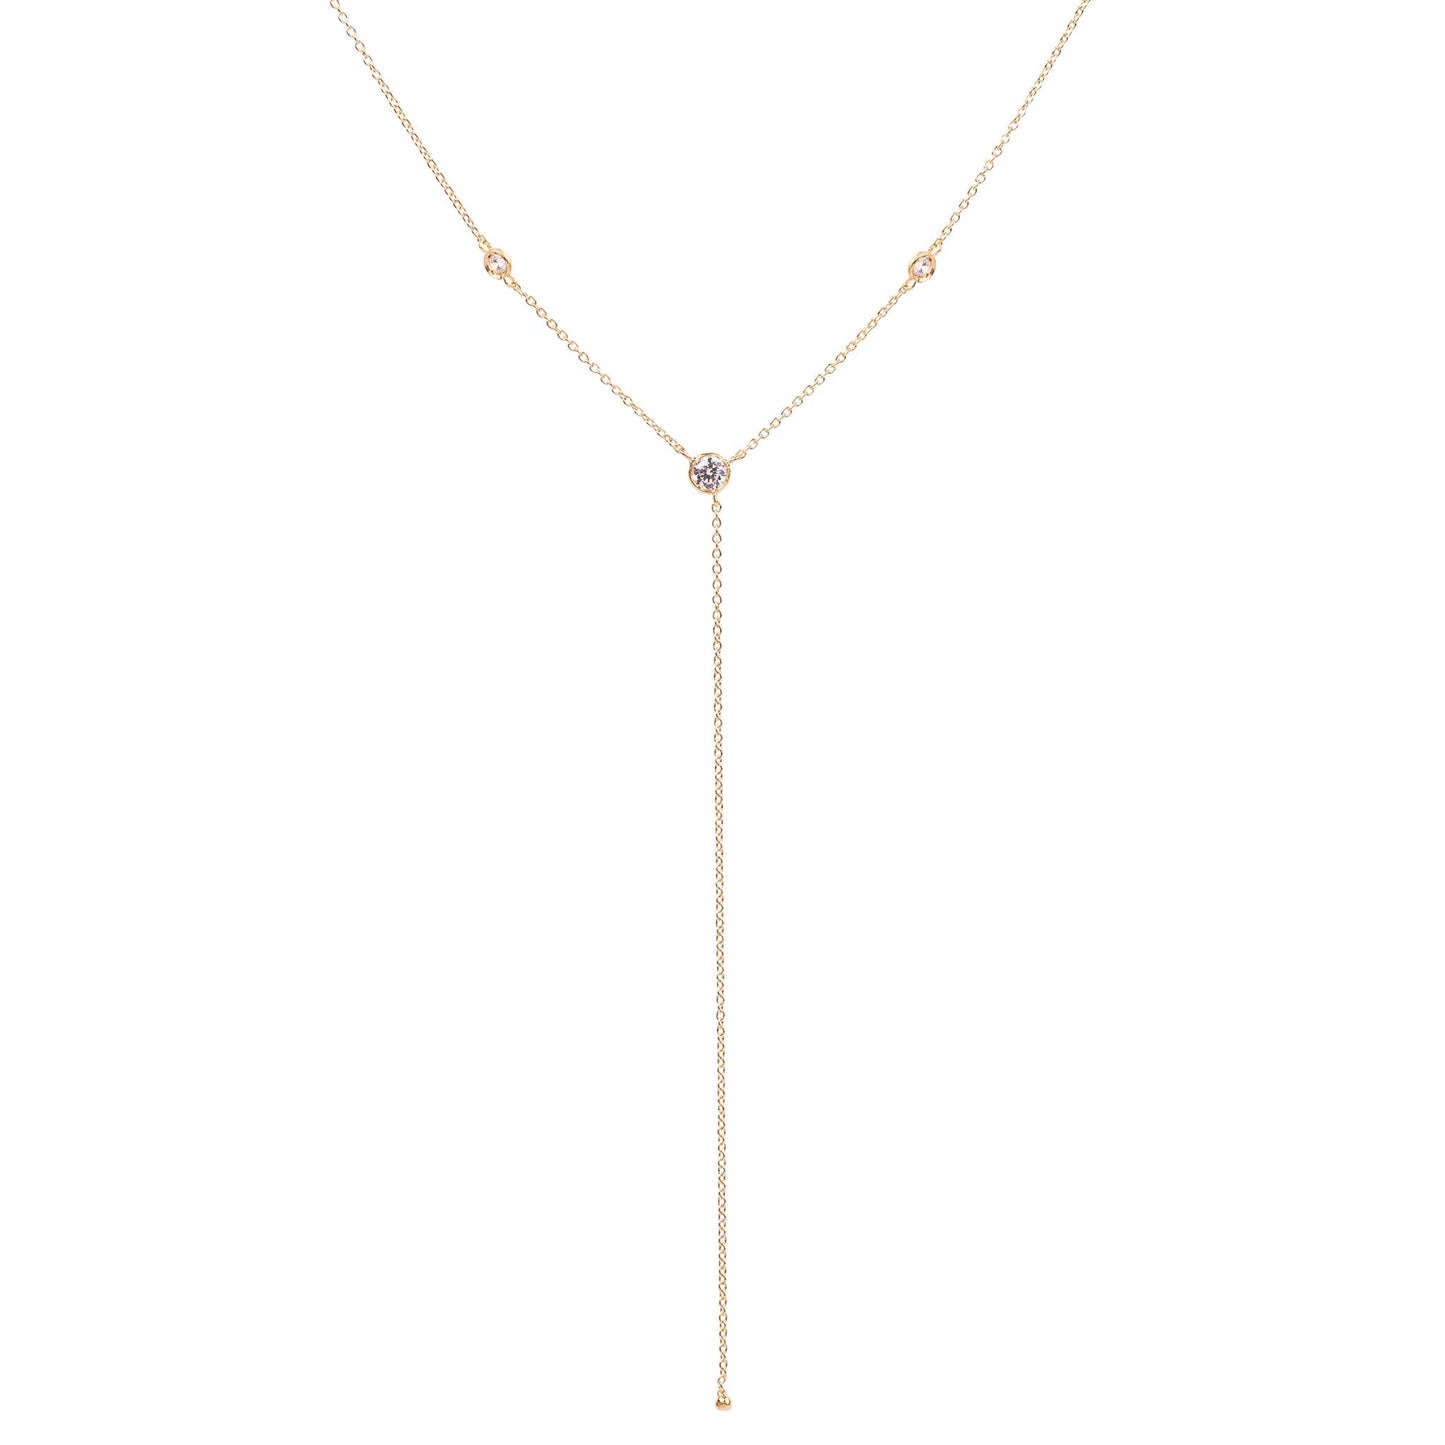 The dew drop necklace - Oria.jewelry